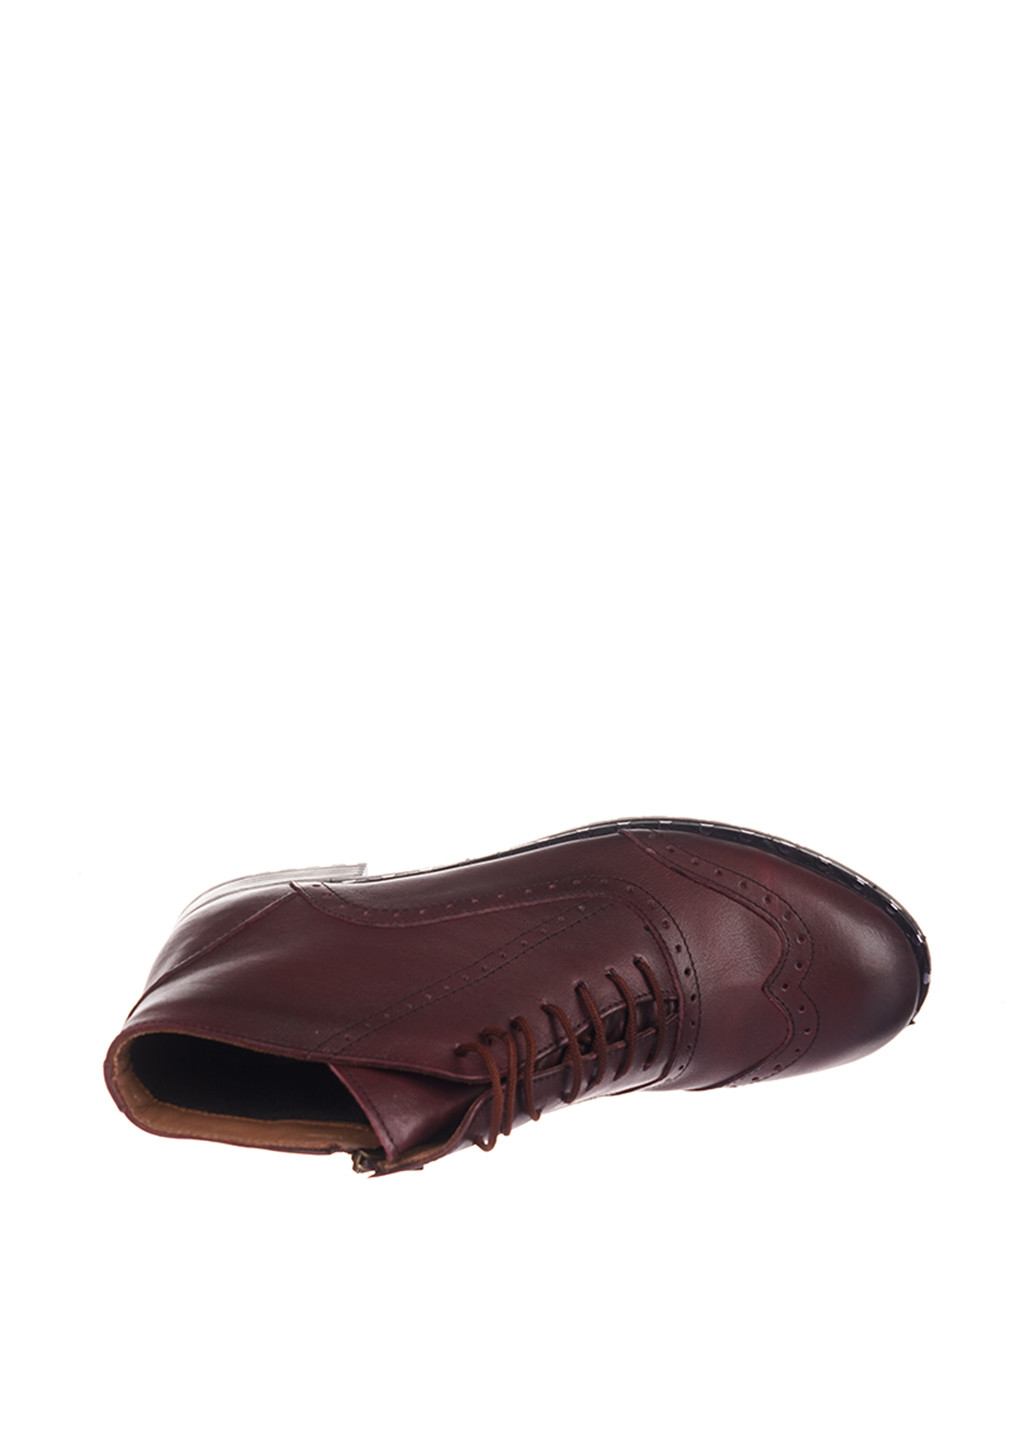 Осенние ботинки Goover со шнуровкой, с перфорацией